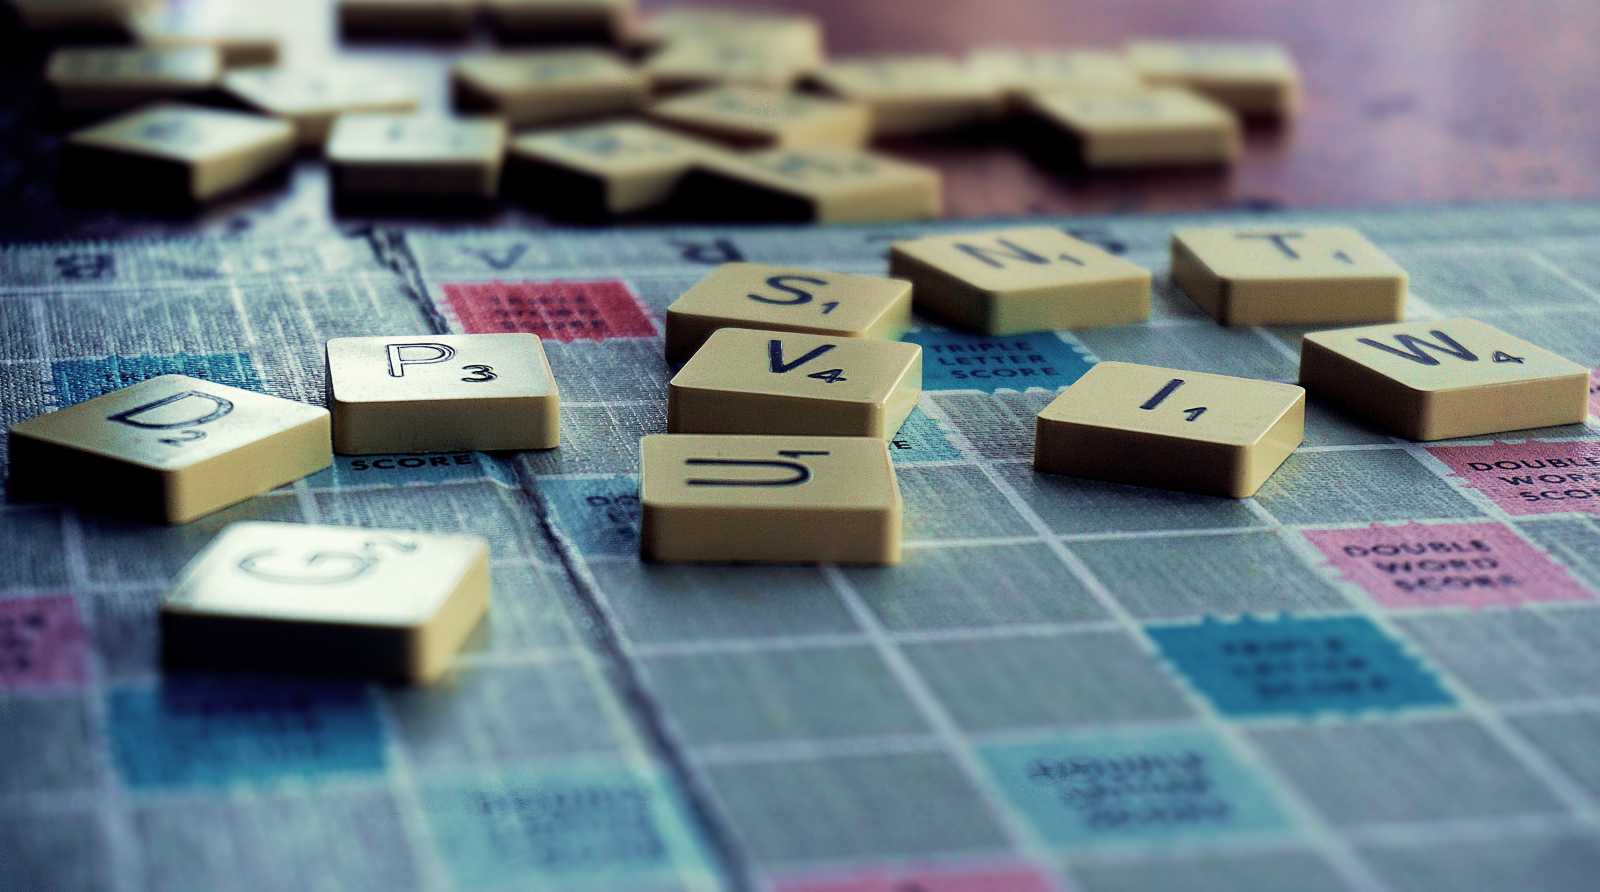 Scrabble | Illusztráció forrása: Pexels